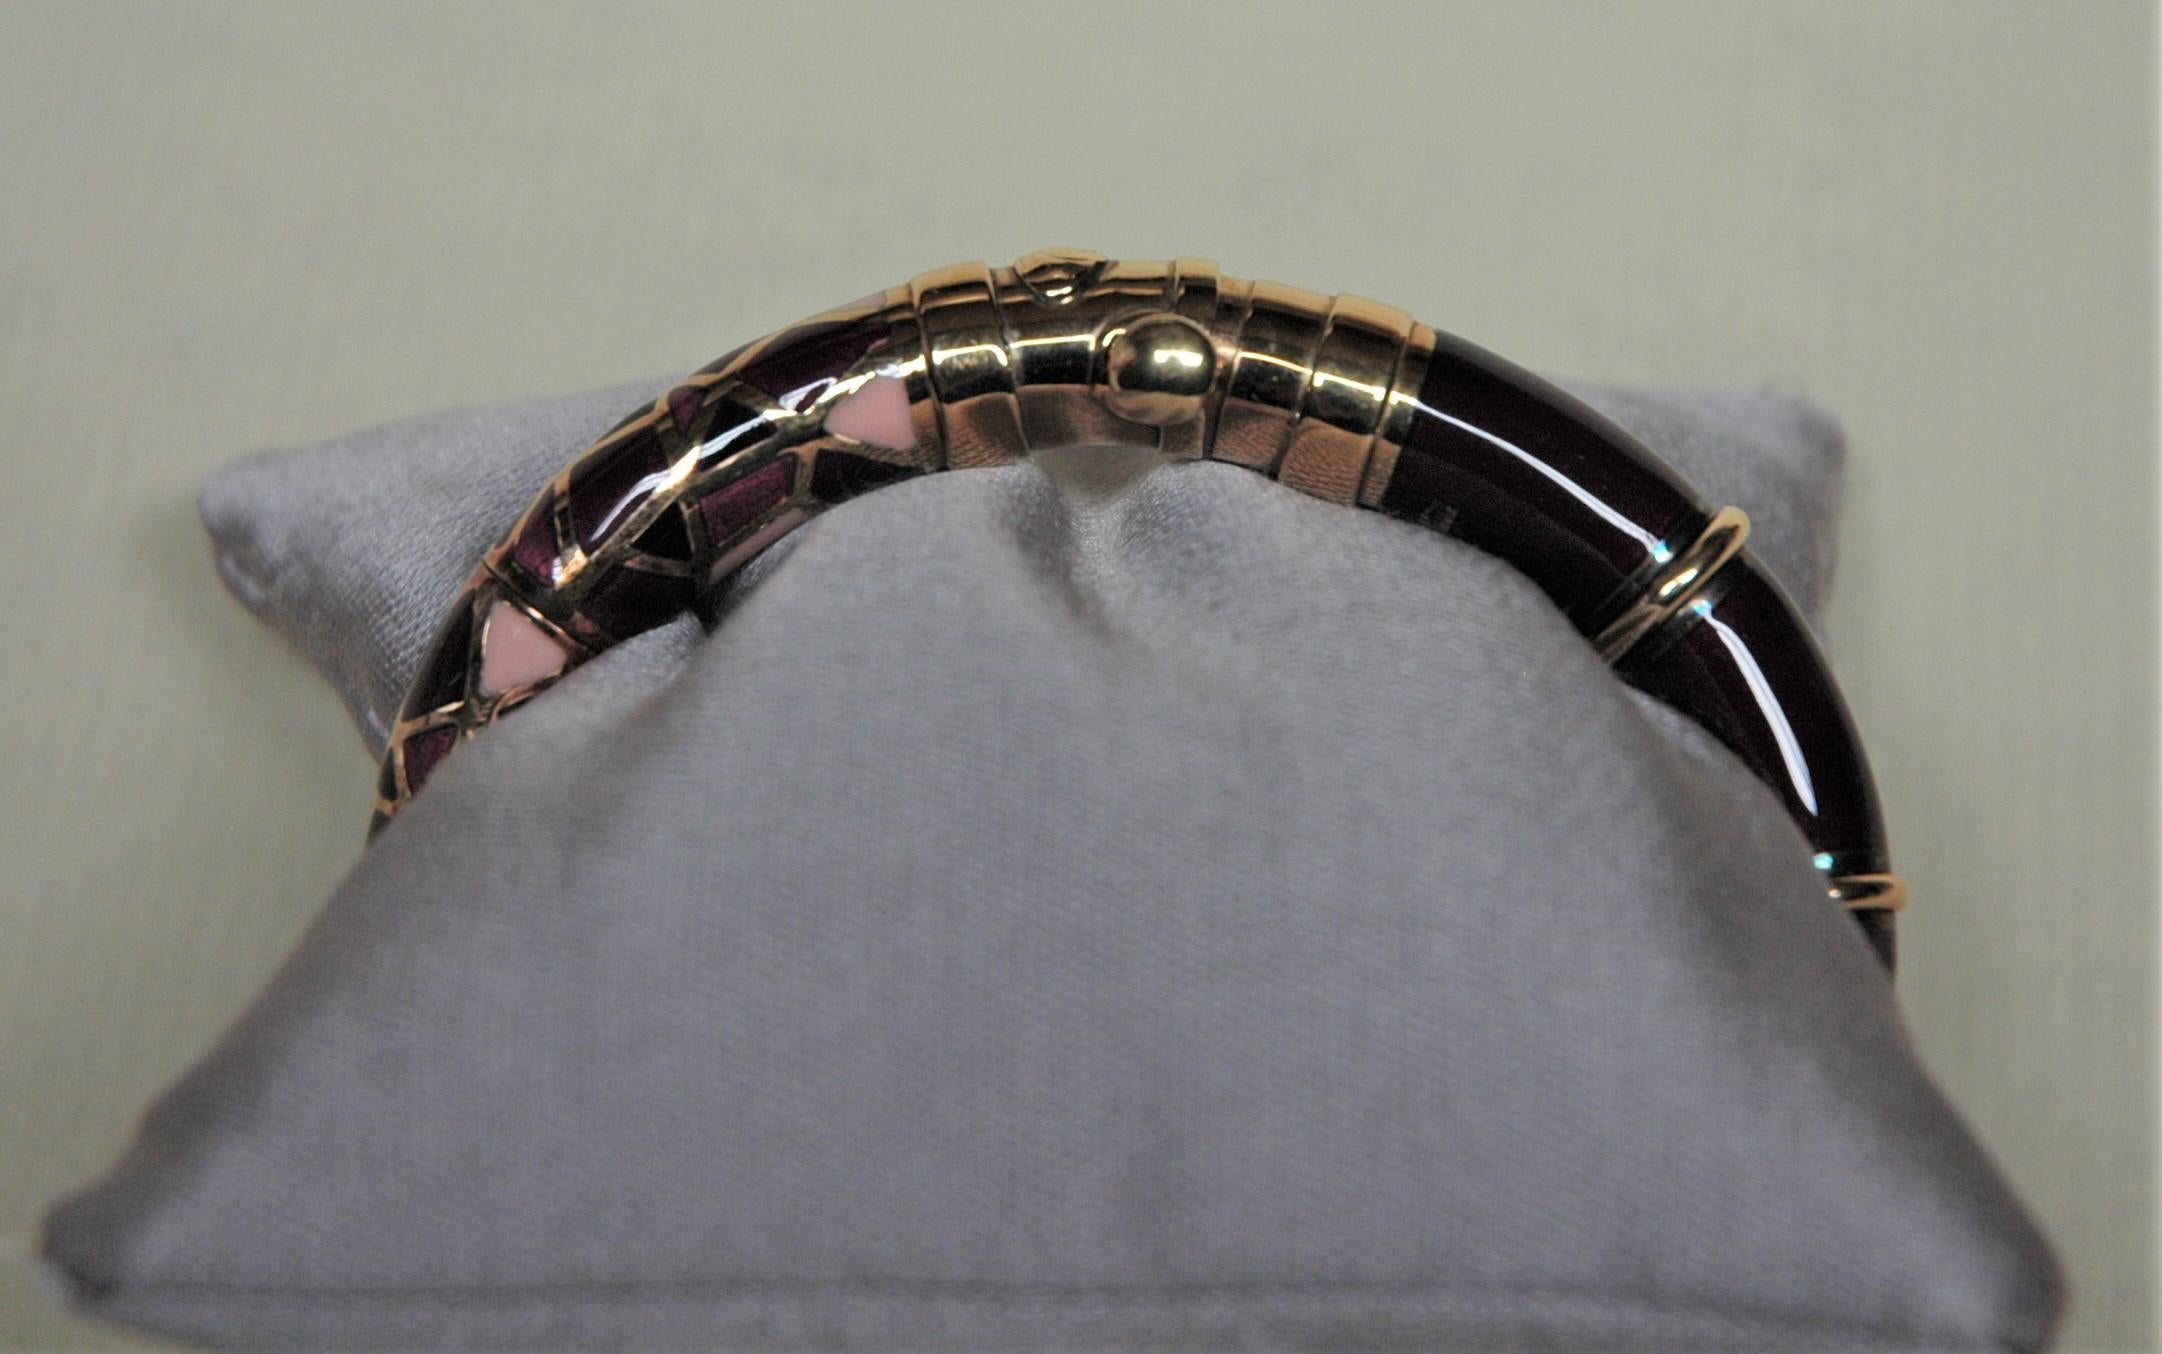 Sehr schönes Armband von Nouvelle Bague. Gelbgold, gelbes Silber und verschiedene Emaile mit rosa, lila und violetten Farben ergeben ein ganz besonderes und trendiges Armband.